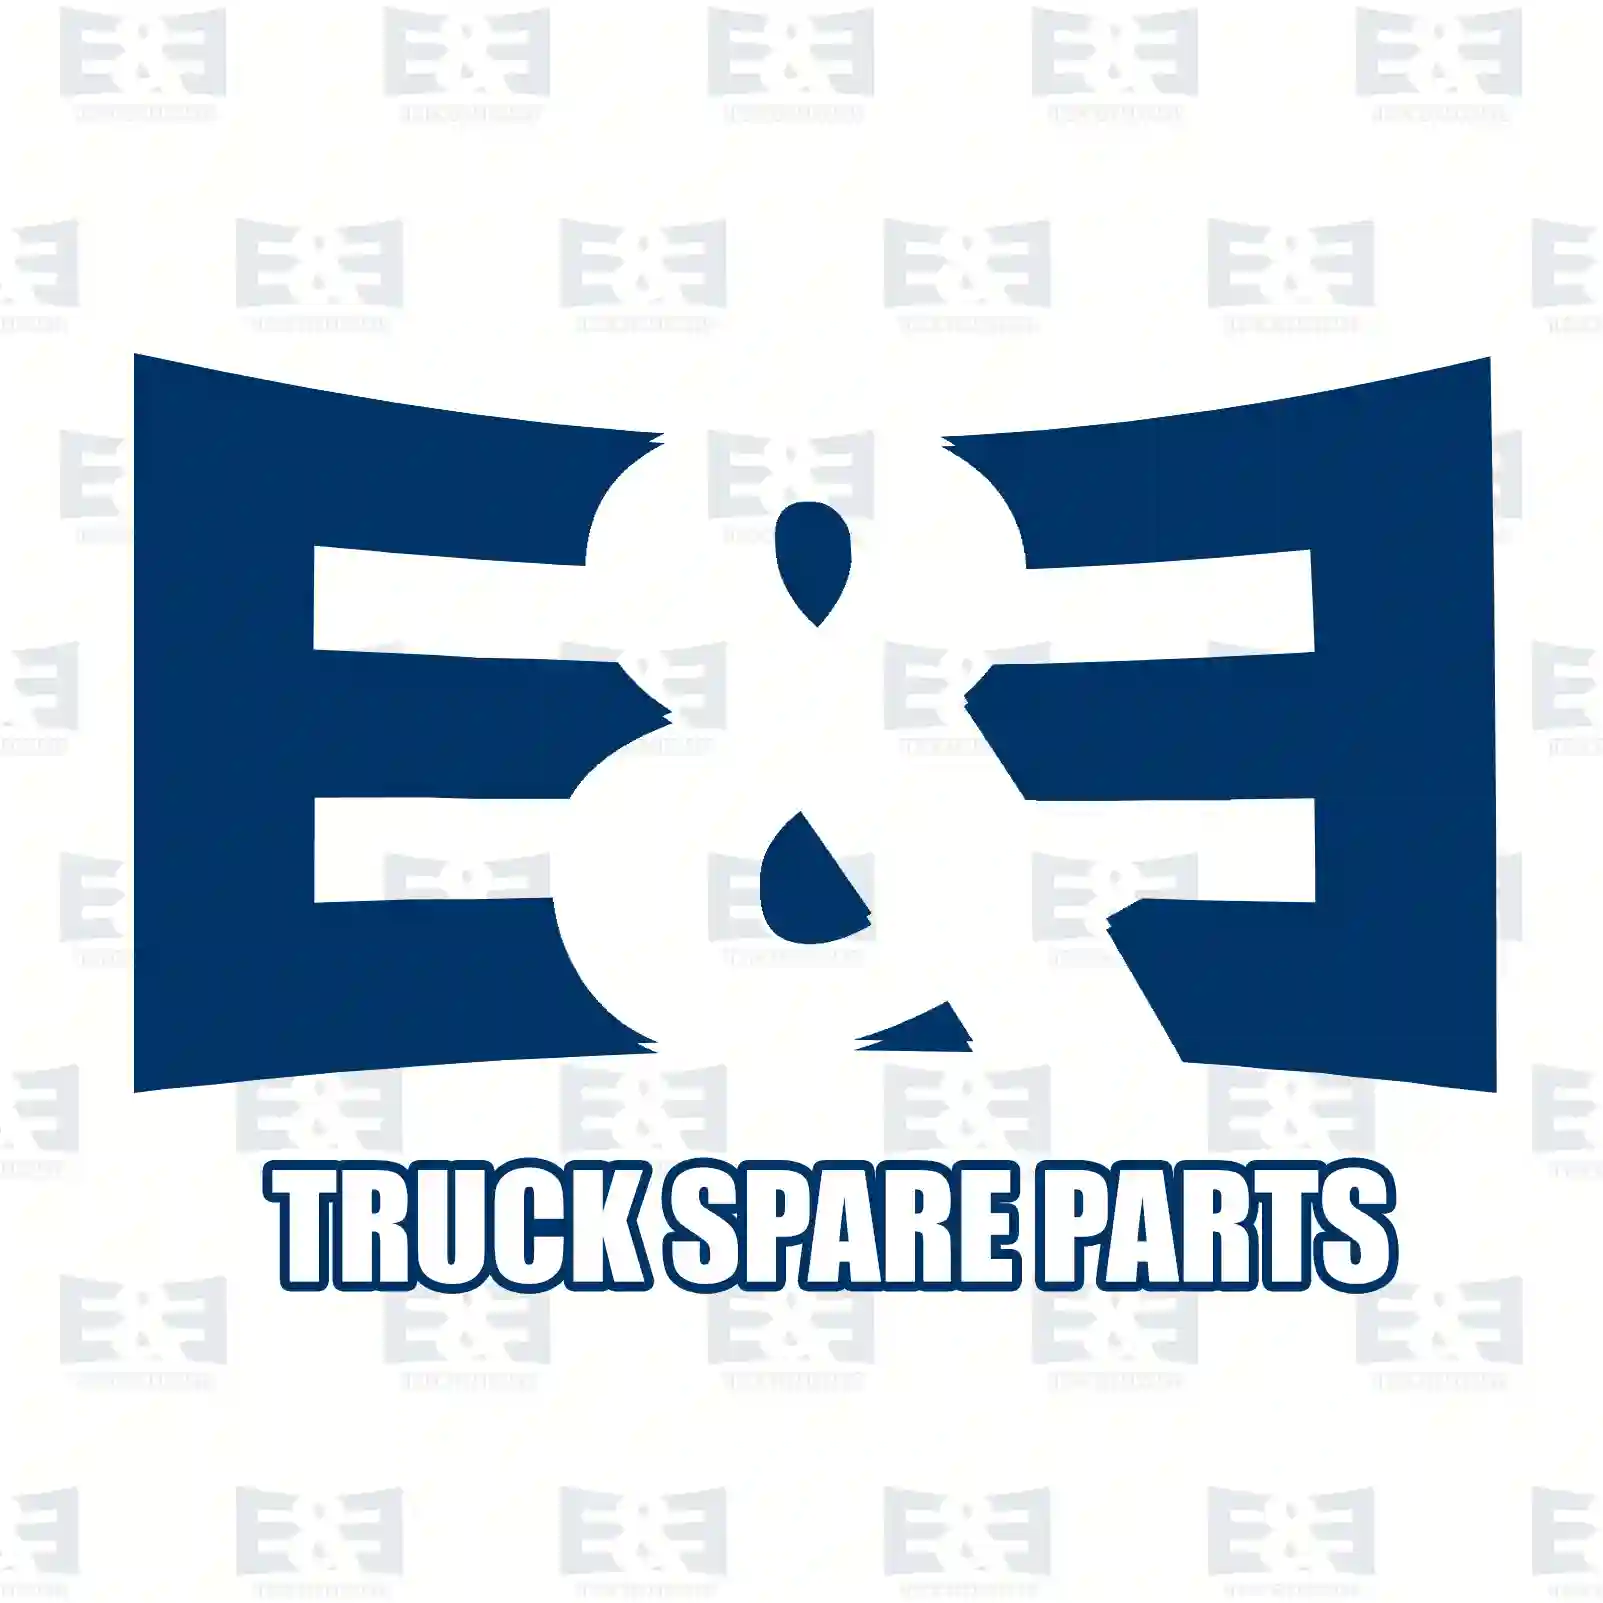 Brake disc, 2E2294839, 02996033, 07188210, 2996033, 7188210, , , , , , ||  2E2294839 E&E Truck Spare Parts | Truck Spare Parts, Auotomotive Spare Parts Brake disc, 2E2294839, 02996033, 07188210, 2996033, 7188210, , , , , , ||  2E2294839 E&E Truck Spare Parts | Truck Spare Parts, Auotomotive Spare Parts